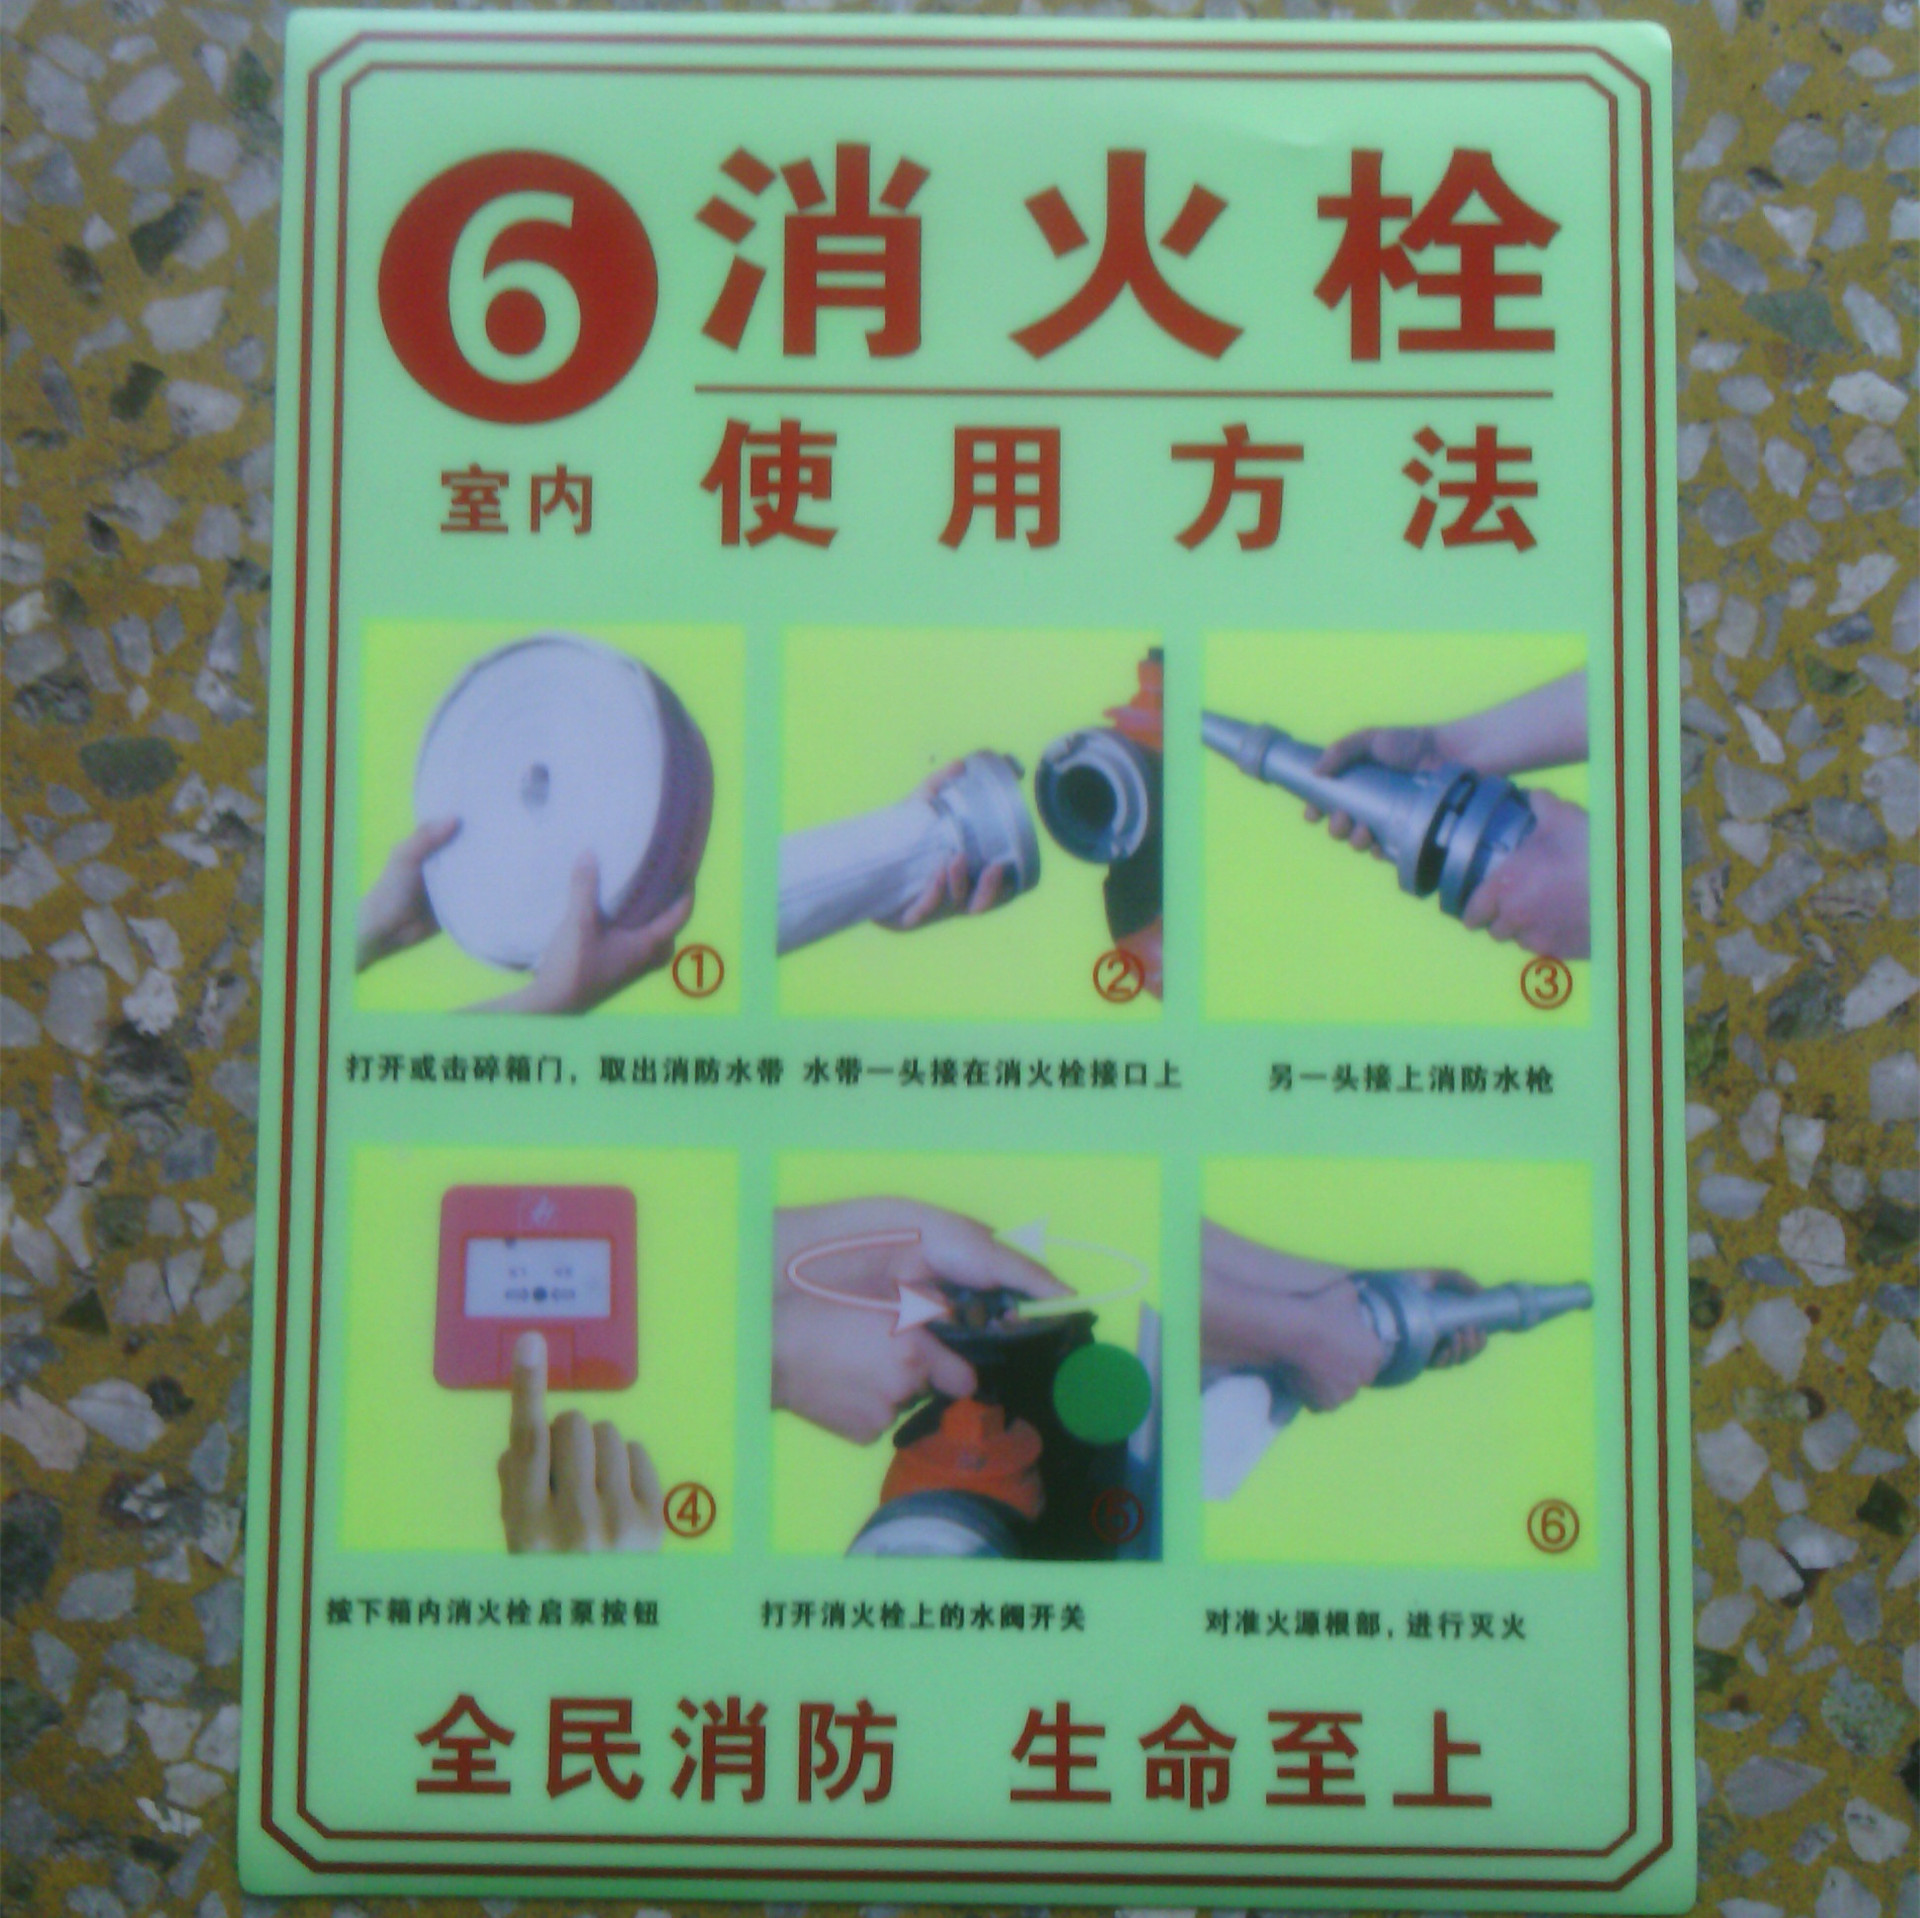 消防警示标志-荧光消火栓使用方法标志,标志牌